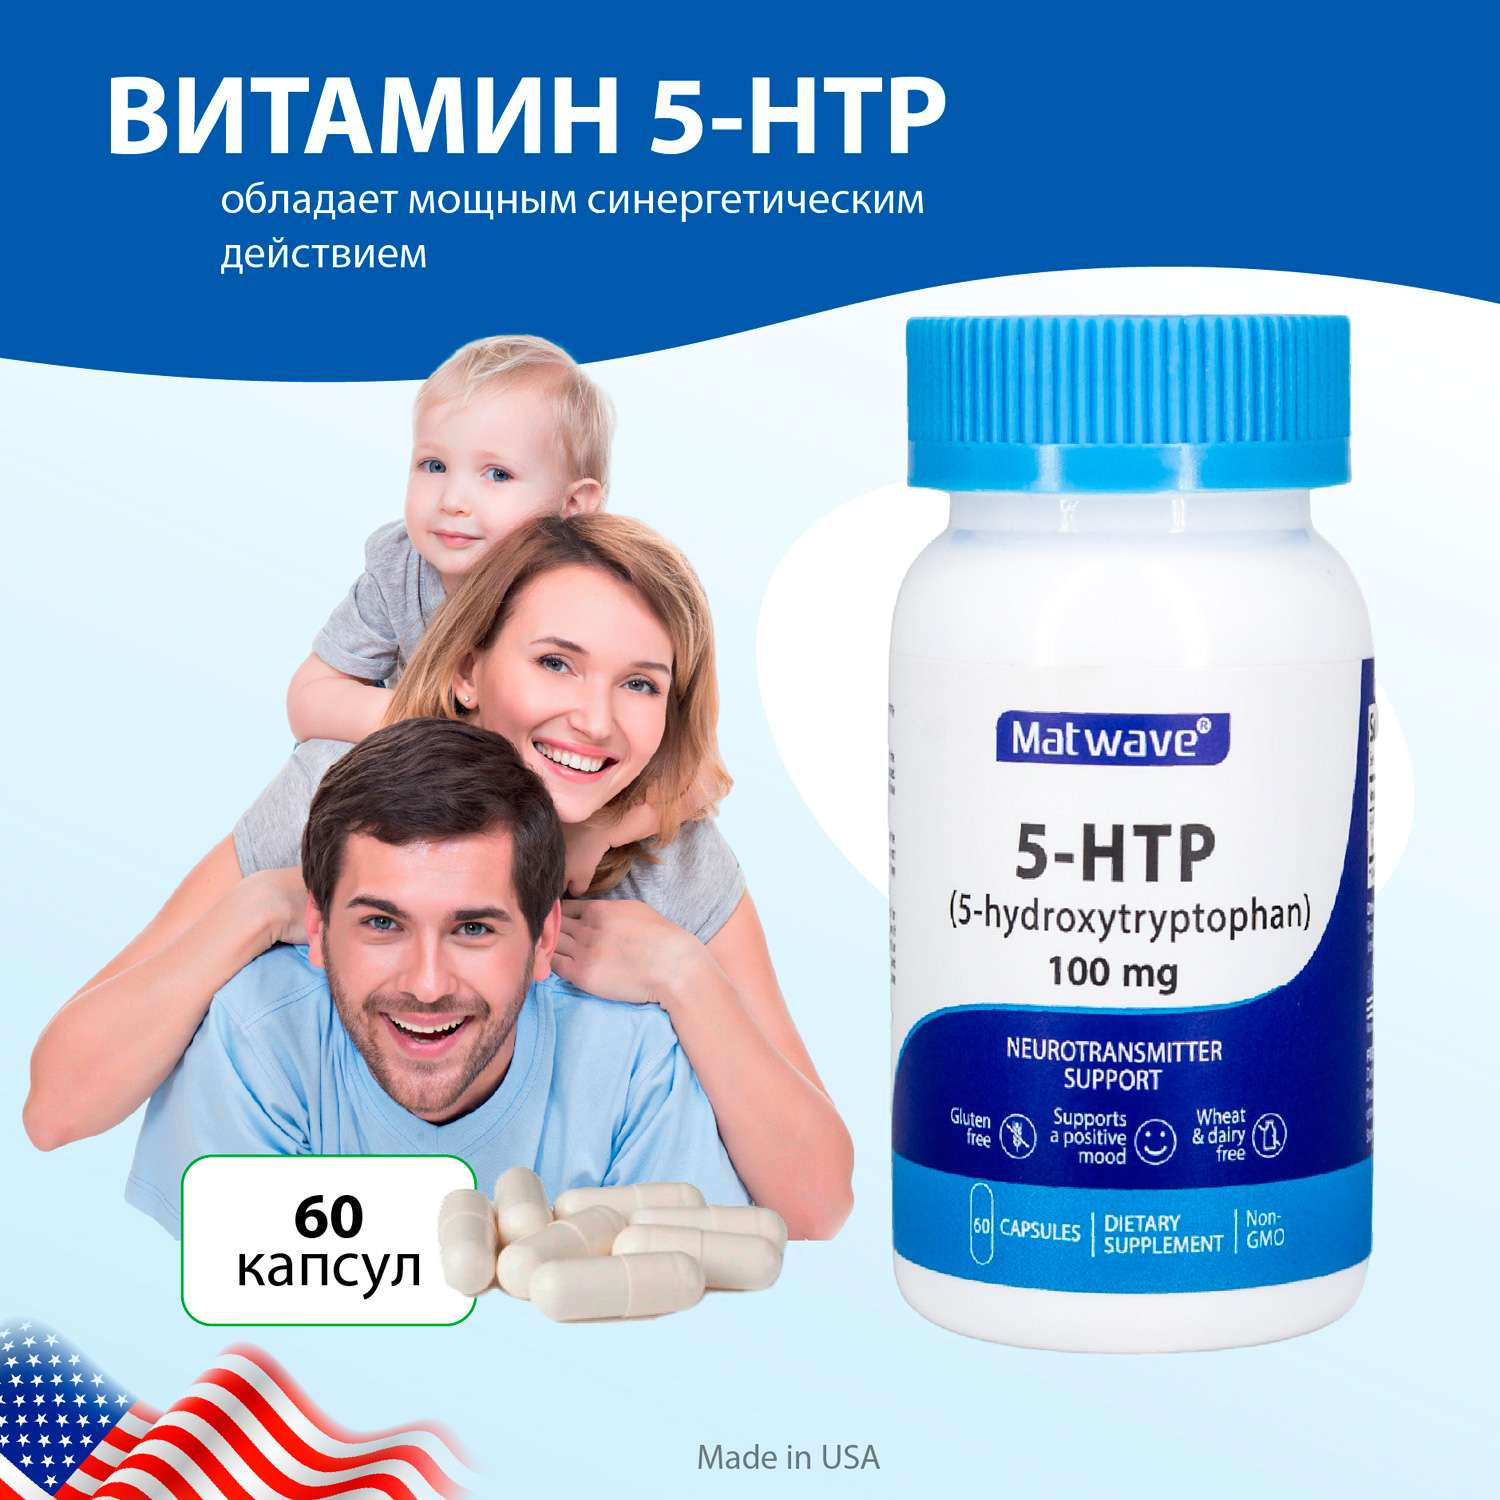 БАД Matwave 5-HTP 100 mg 5-гидрокситриптофан 60 капсул комплект 3 банки - фото 3